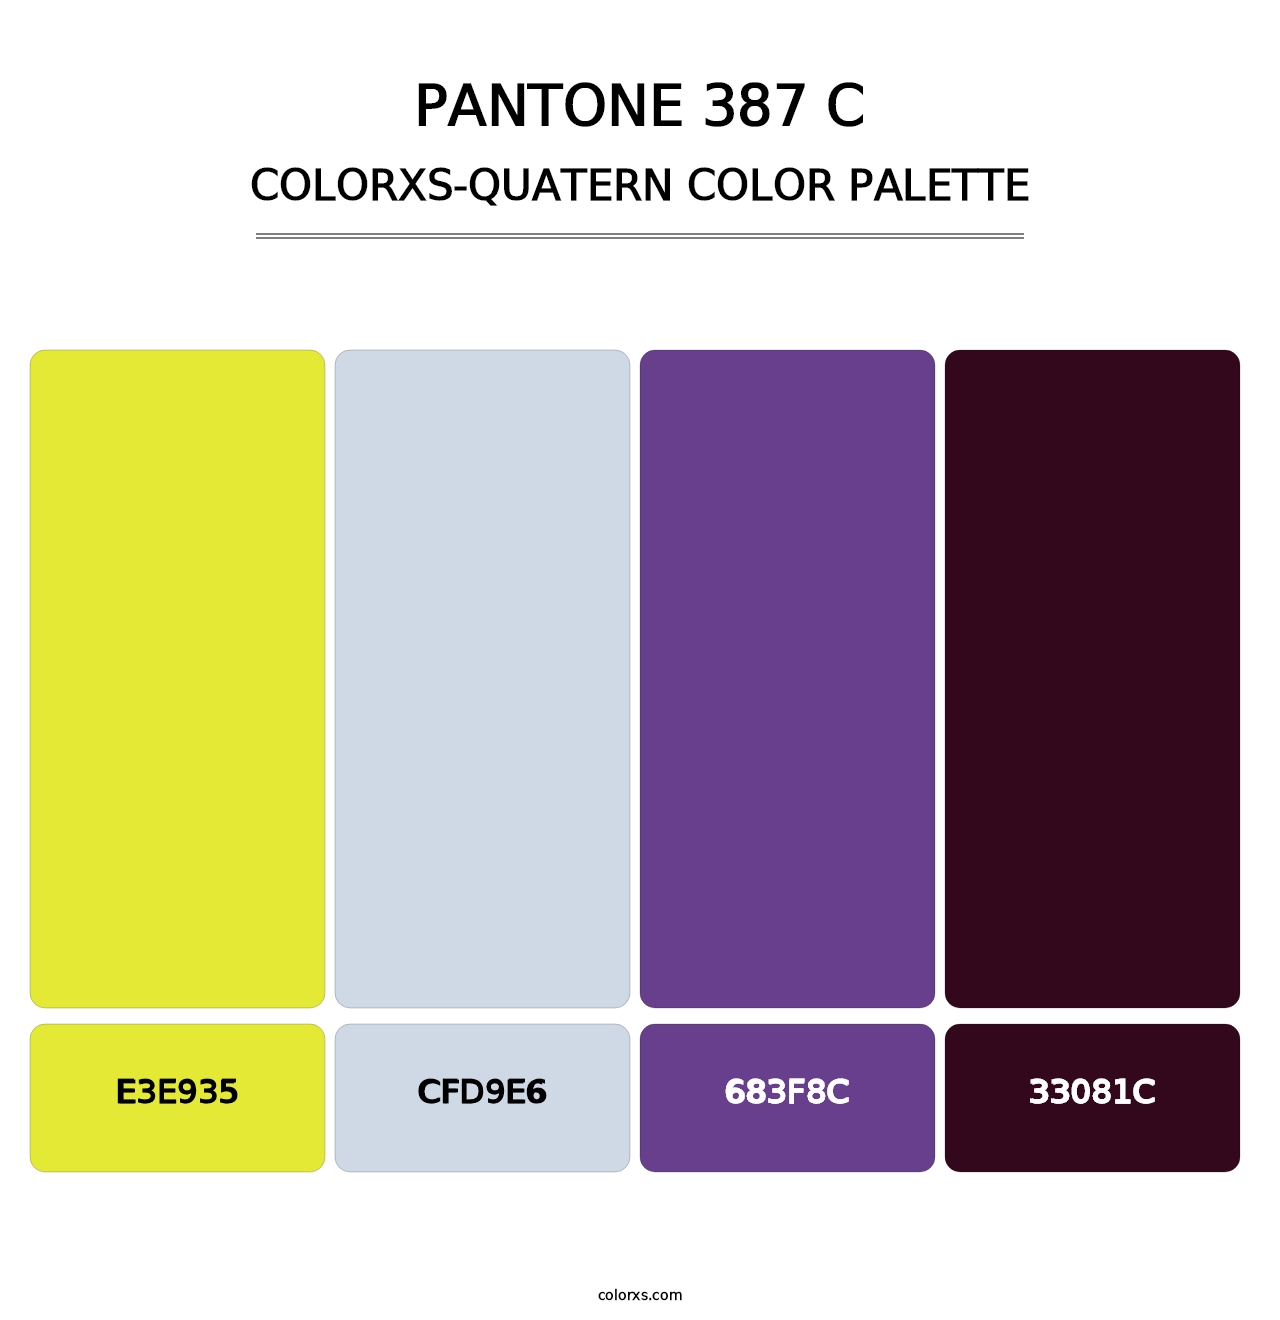 PANTONE 387 C - Colorxs Quatern Palette